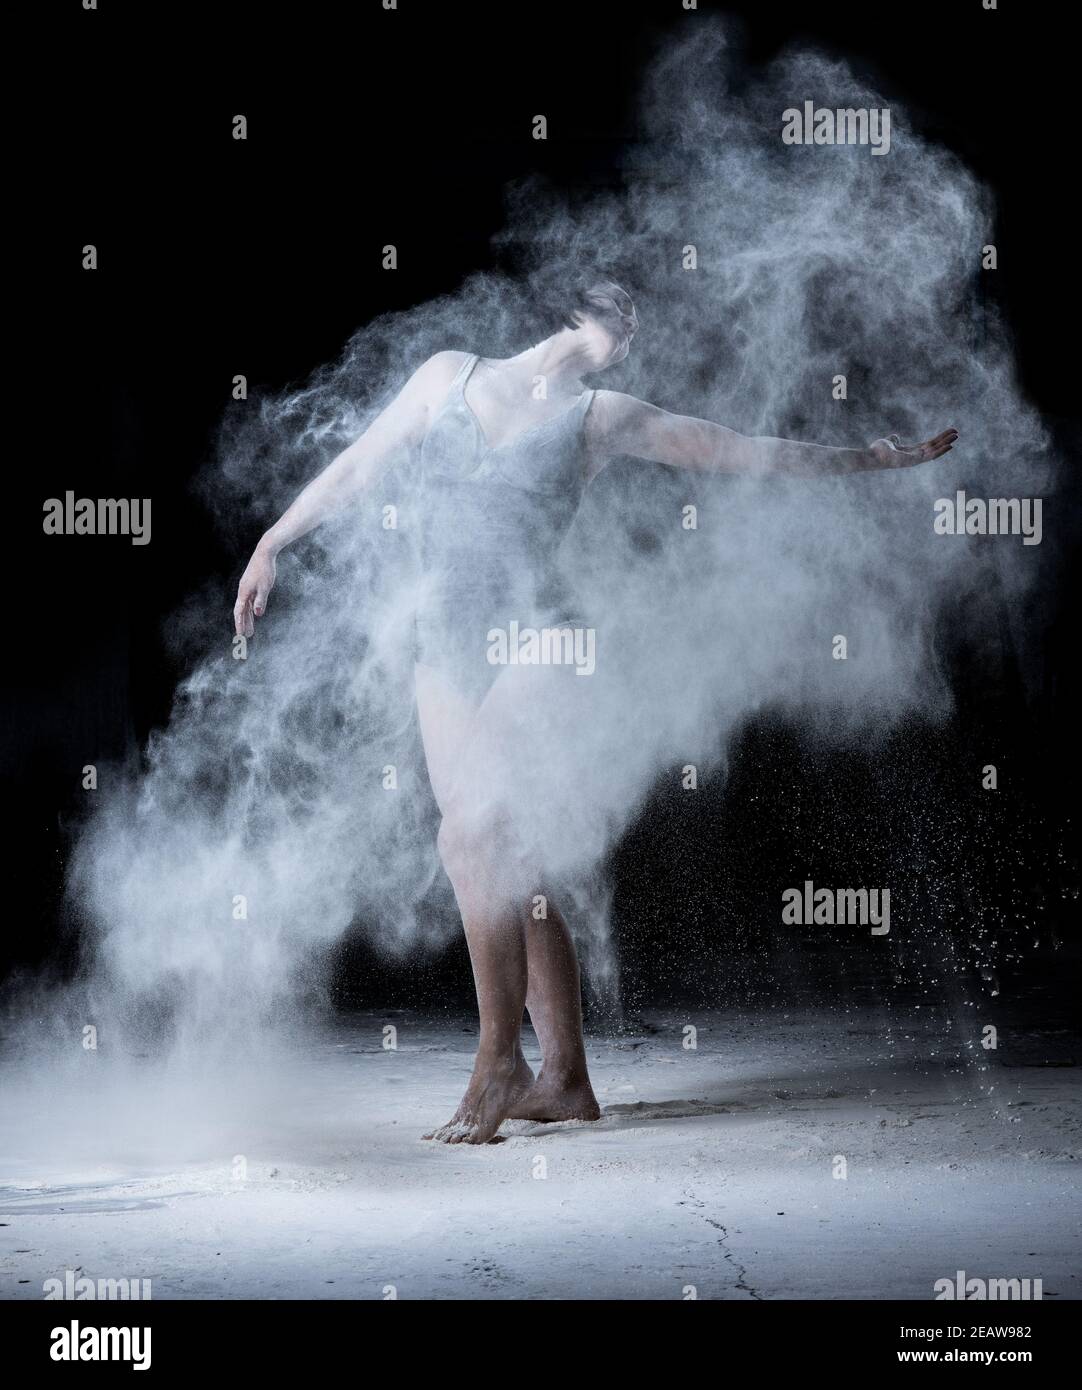 femme avec une figure sportive dansant dans un nuage de farine blanche dispersée sur fond noir Banque D'Images